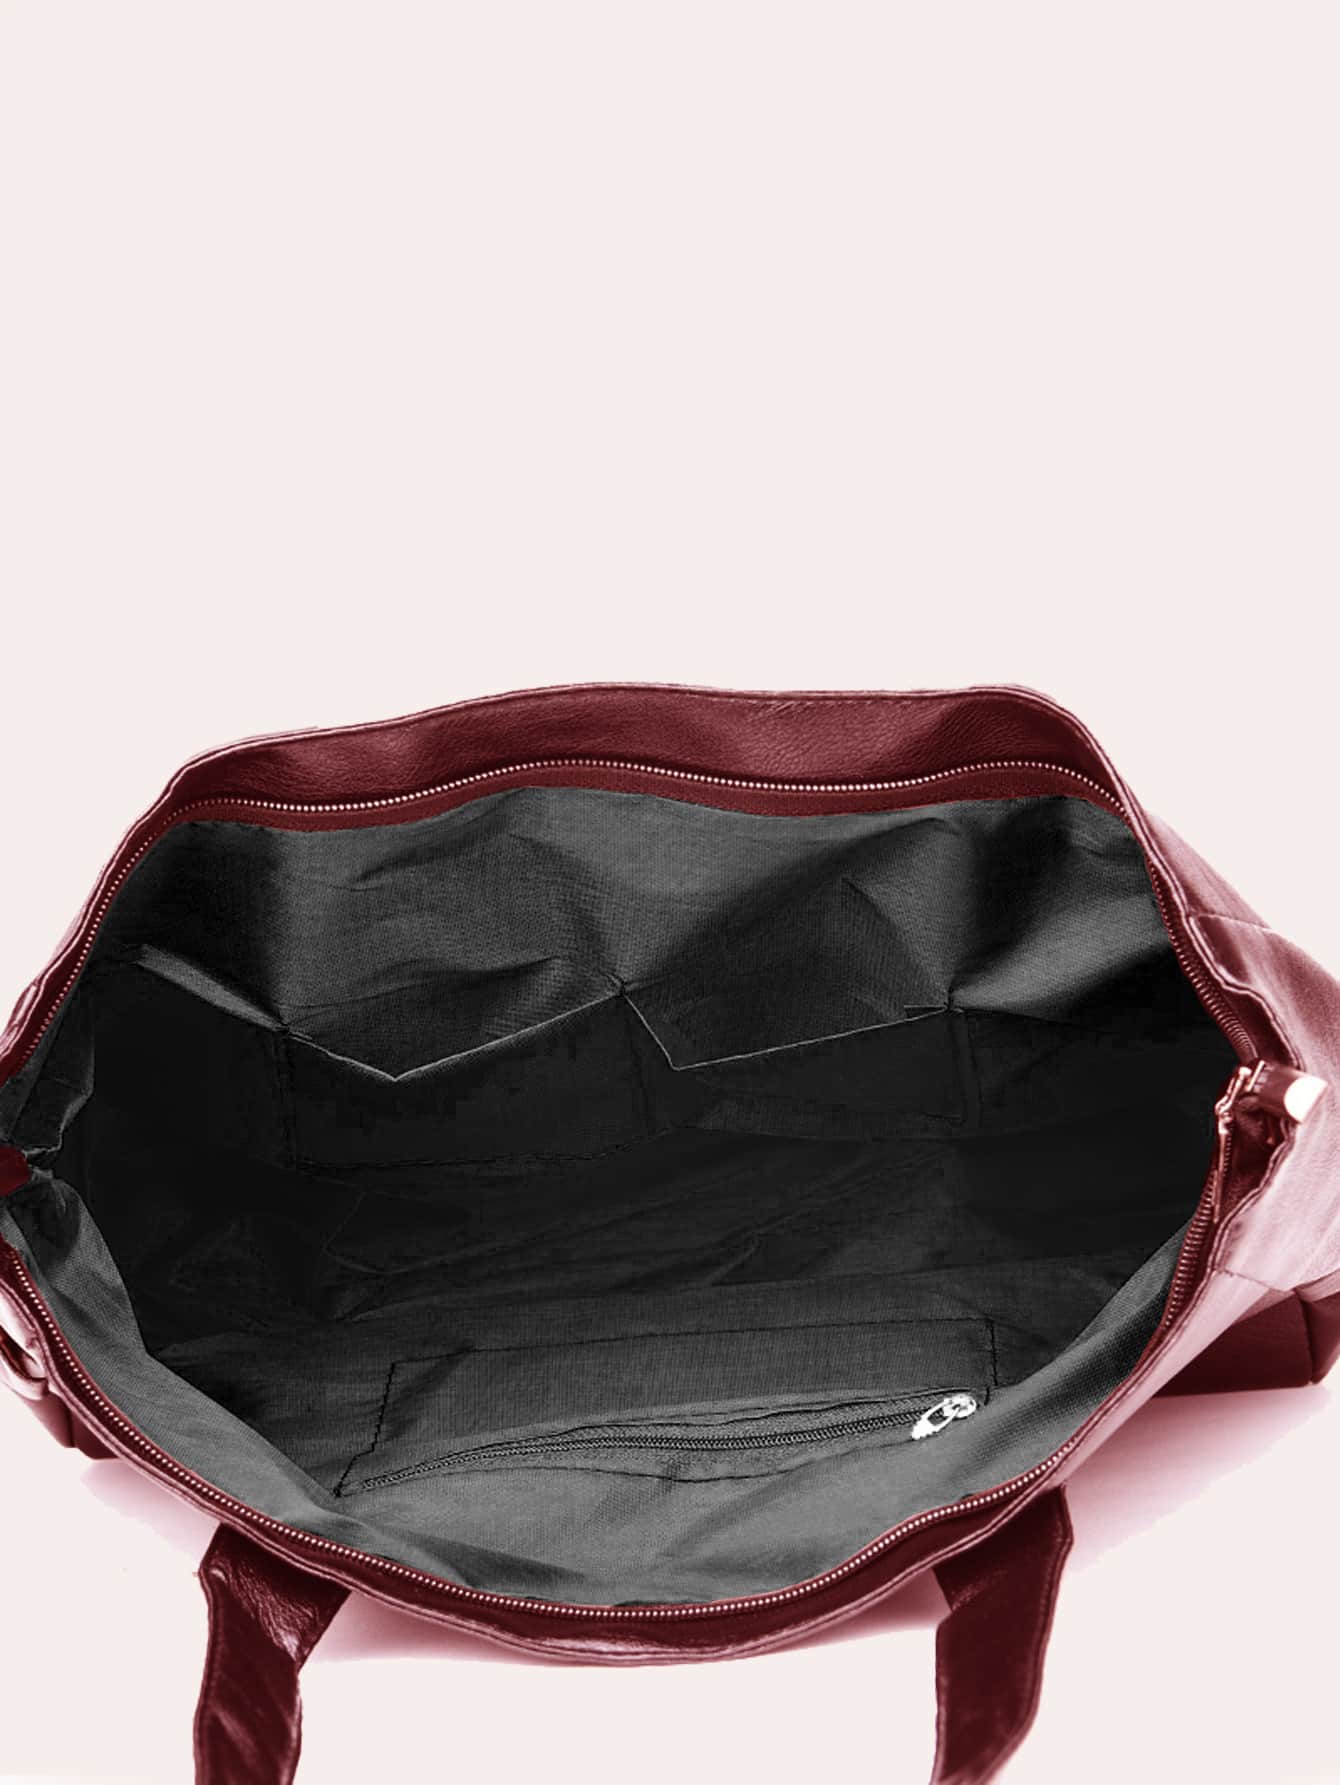 EMERY ROSE Large Capacity Shoulder Tote Bag